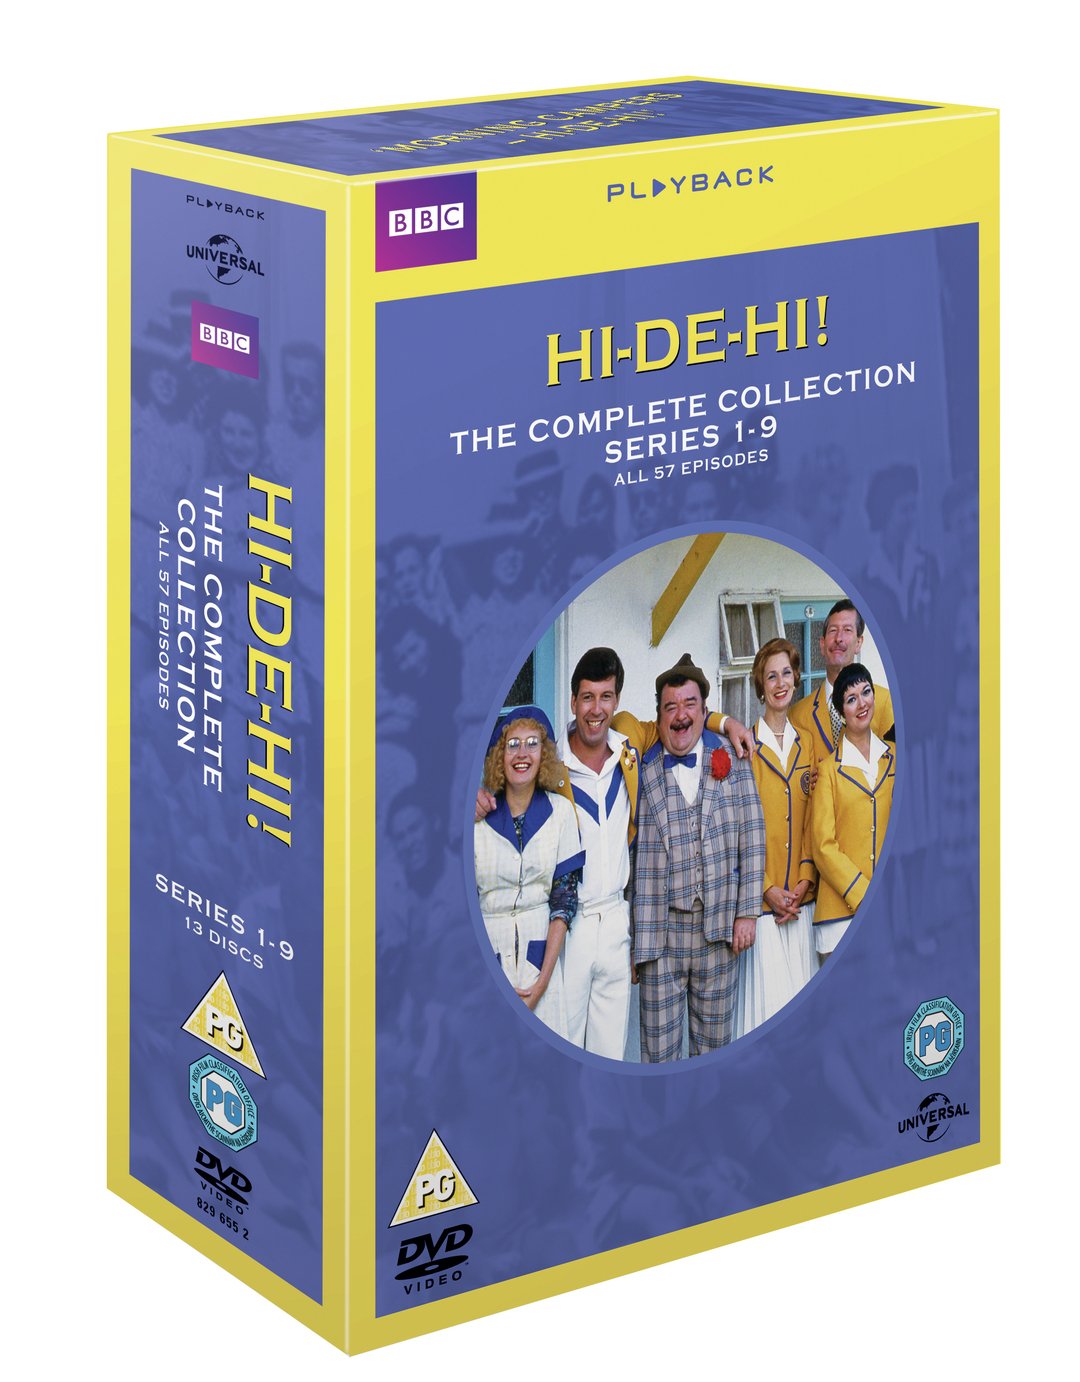 Hi-de-Hi! The Complete Series DVD Box Set Review